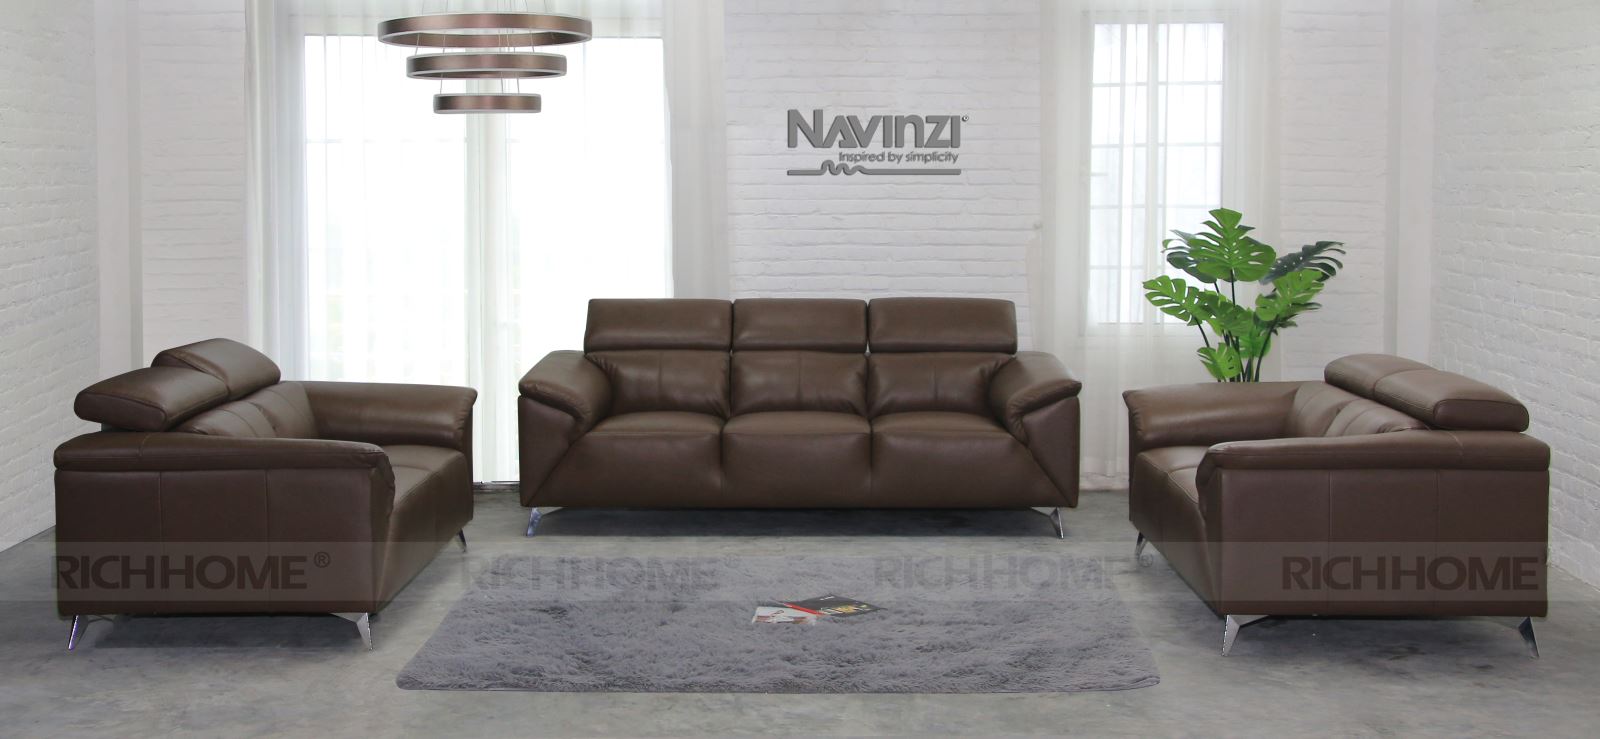 Những mẫu sofa da hiện đại cho phòng khách nhà bạn - Ảnh 4